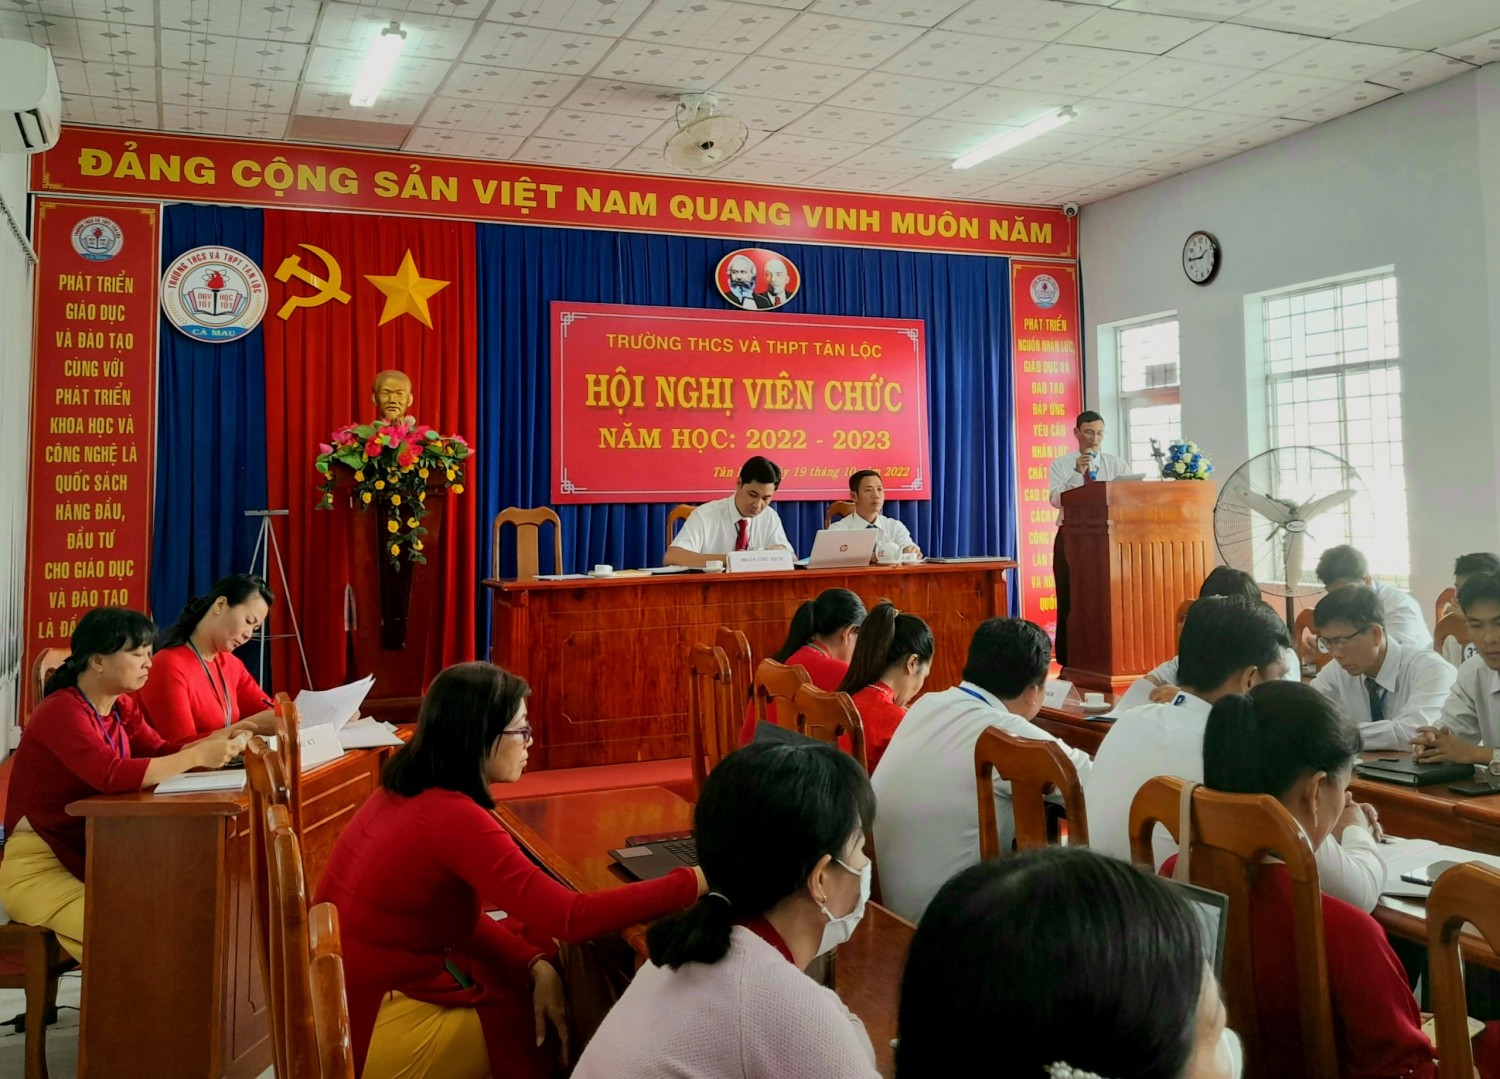 Đ/c Nguyễn Hữu Thiện Phó hiệu trưởng báo cáo trước hội nghị